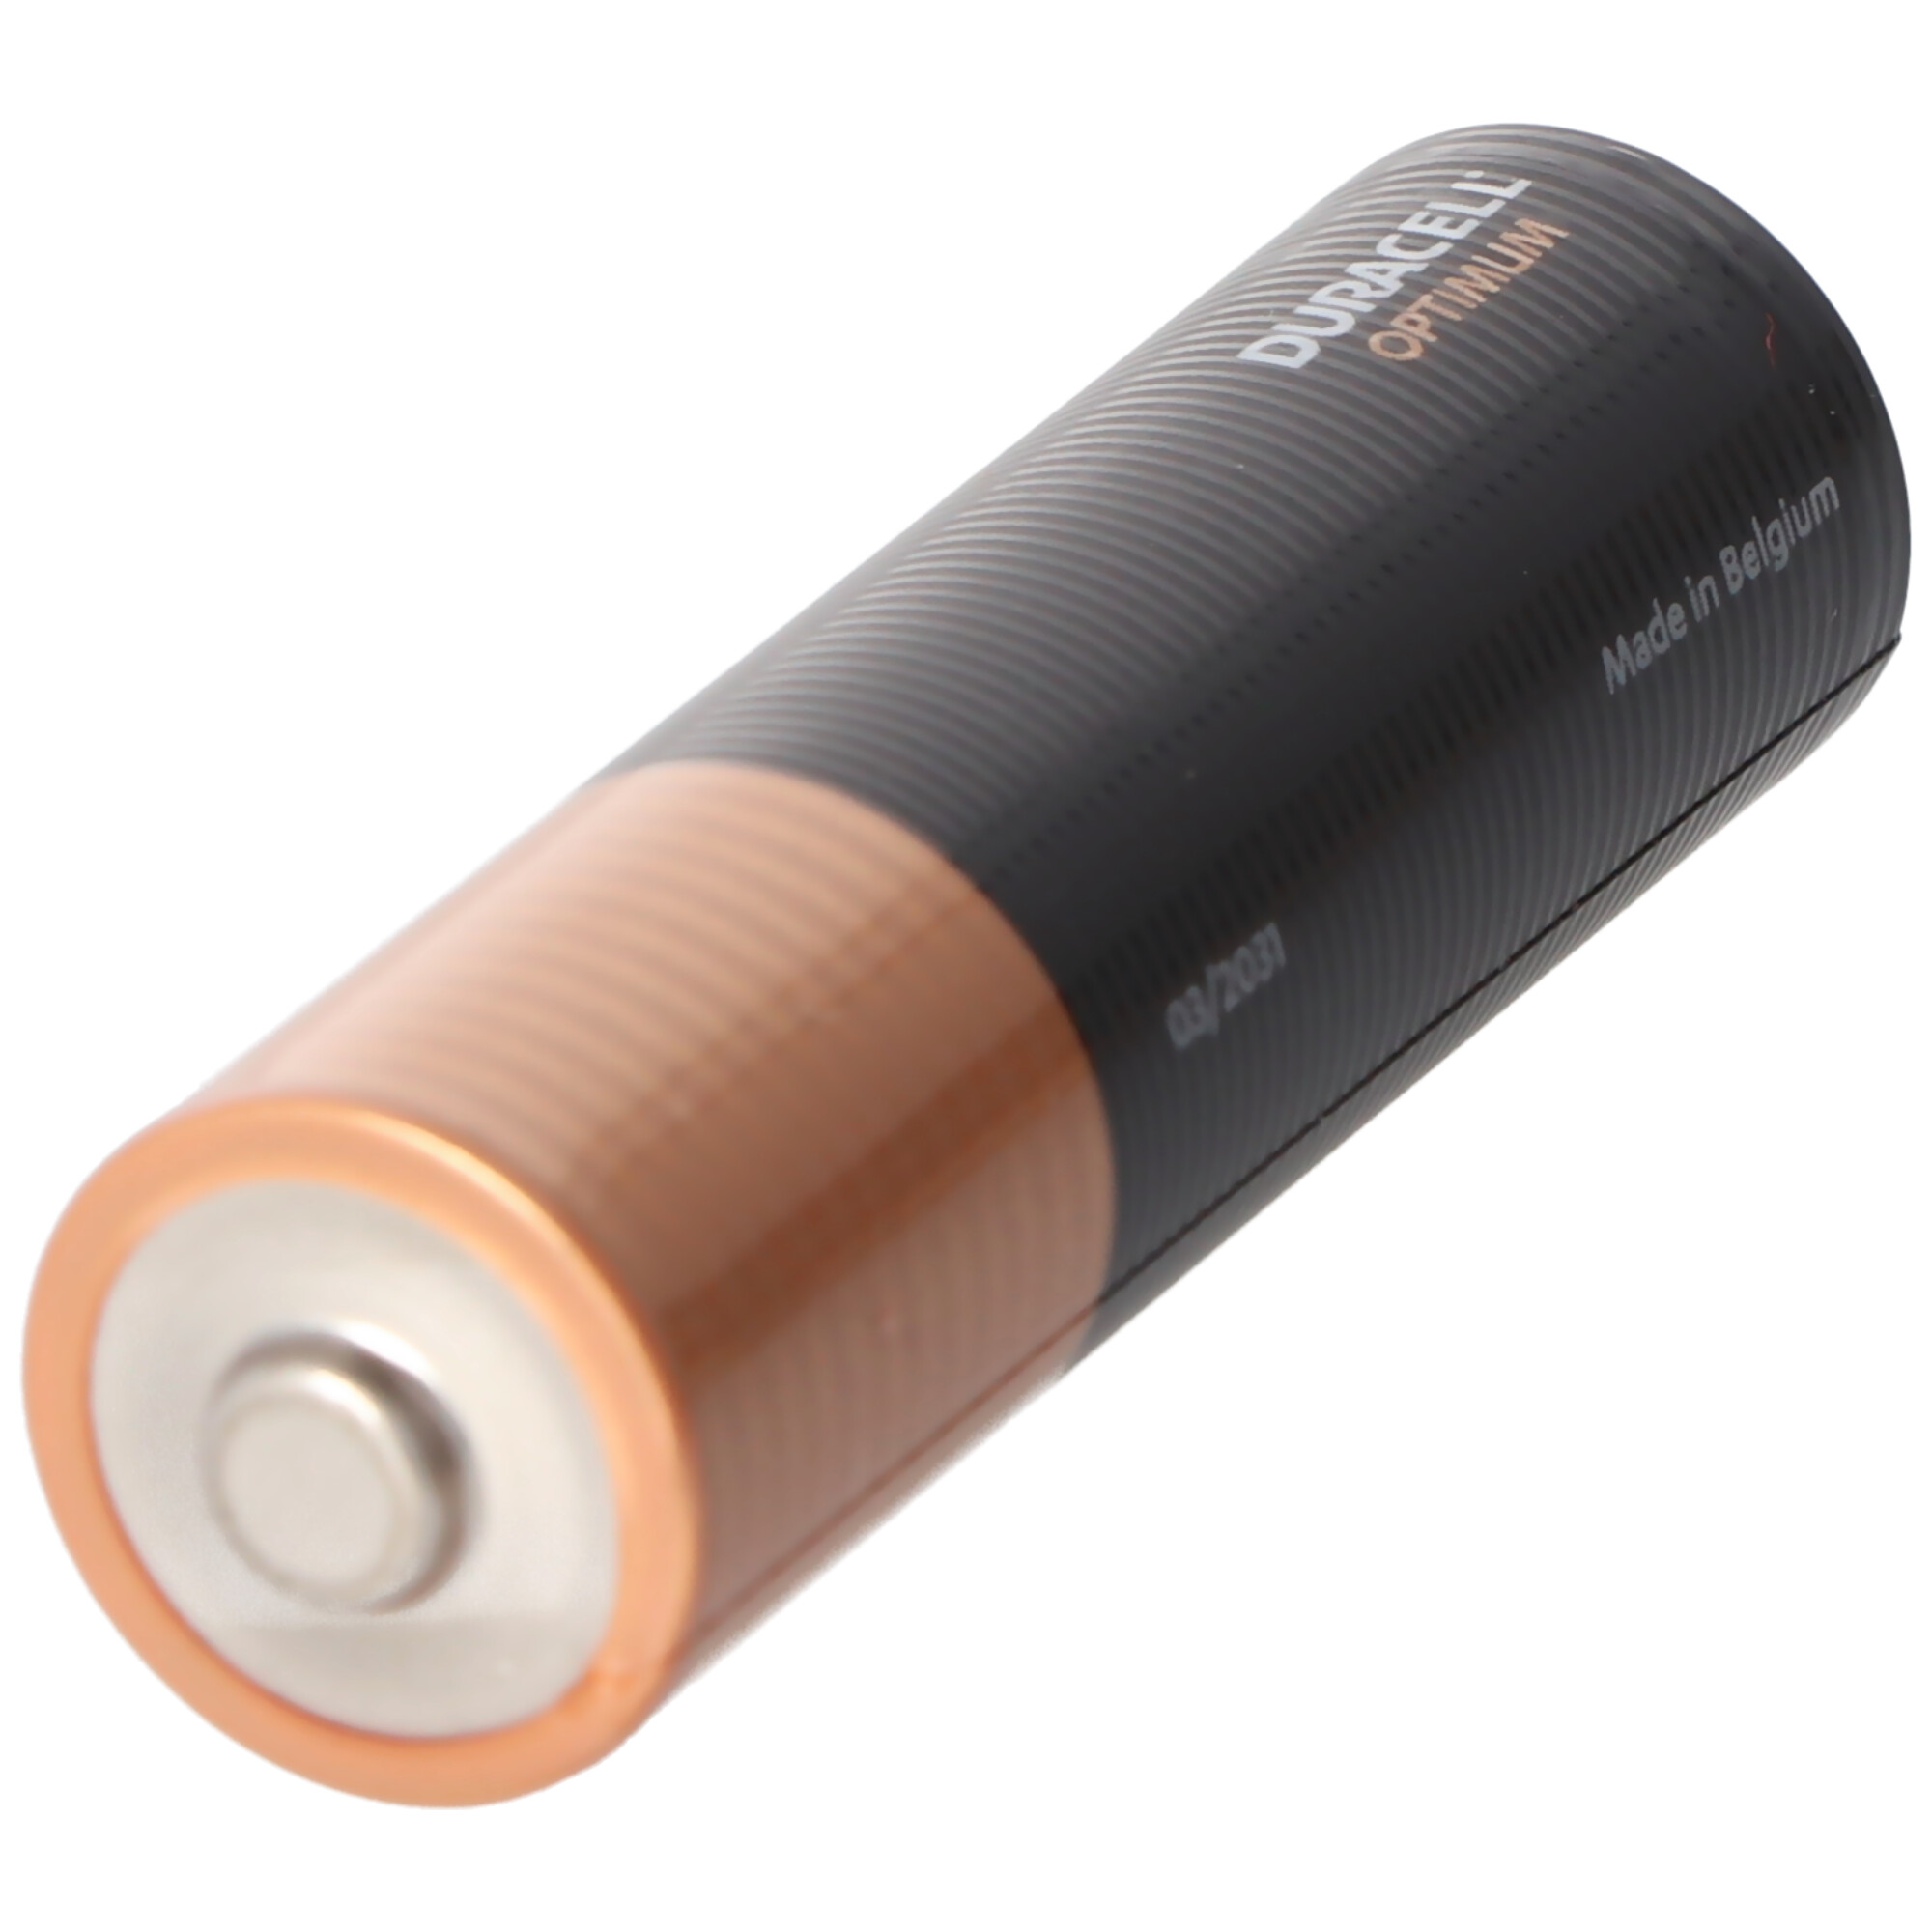 Duracell Optimum AA Mignon Alkaline-Batterien, 1.5V LR6 MX1500, 8er-Pack LR06 5000394137684